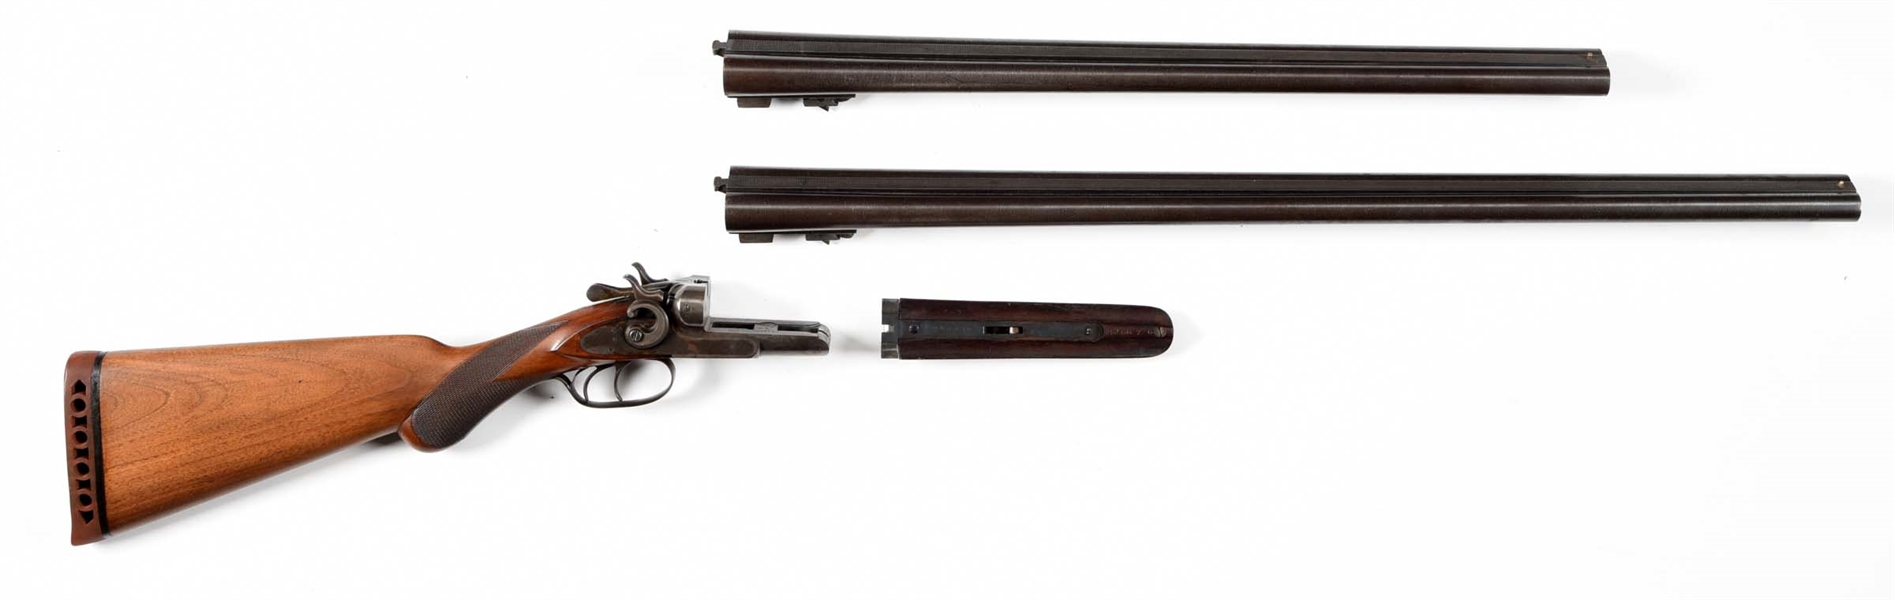 (C) CASED REMINGTON MODEL 1889 SIDE BY SIDE SHOTGUN, 2 BARREL SET.